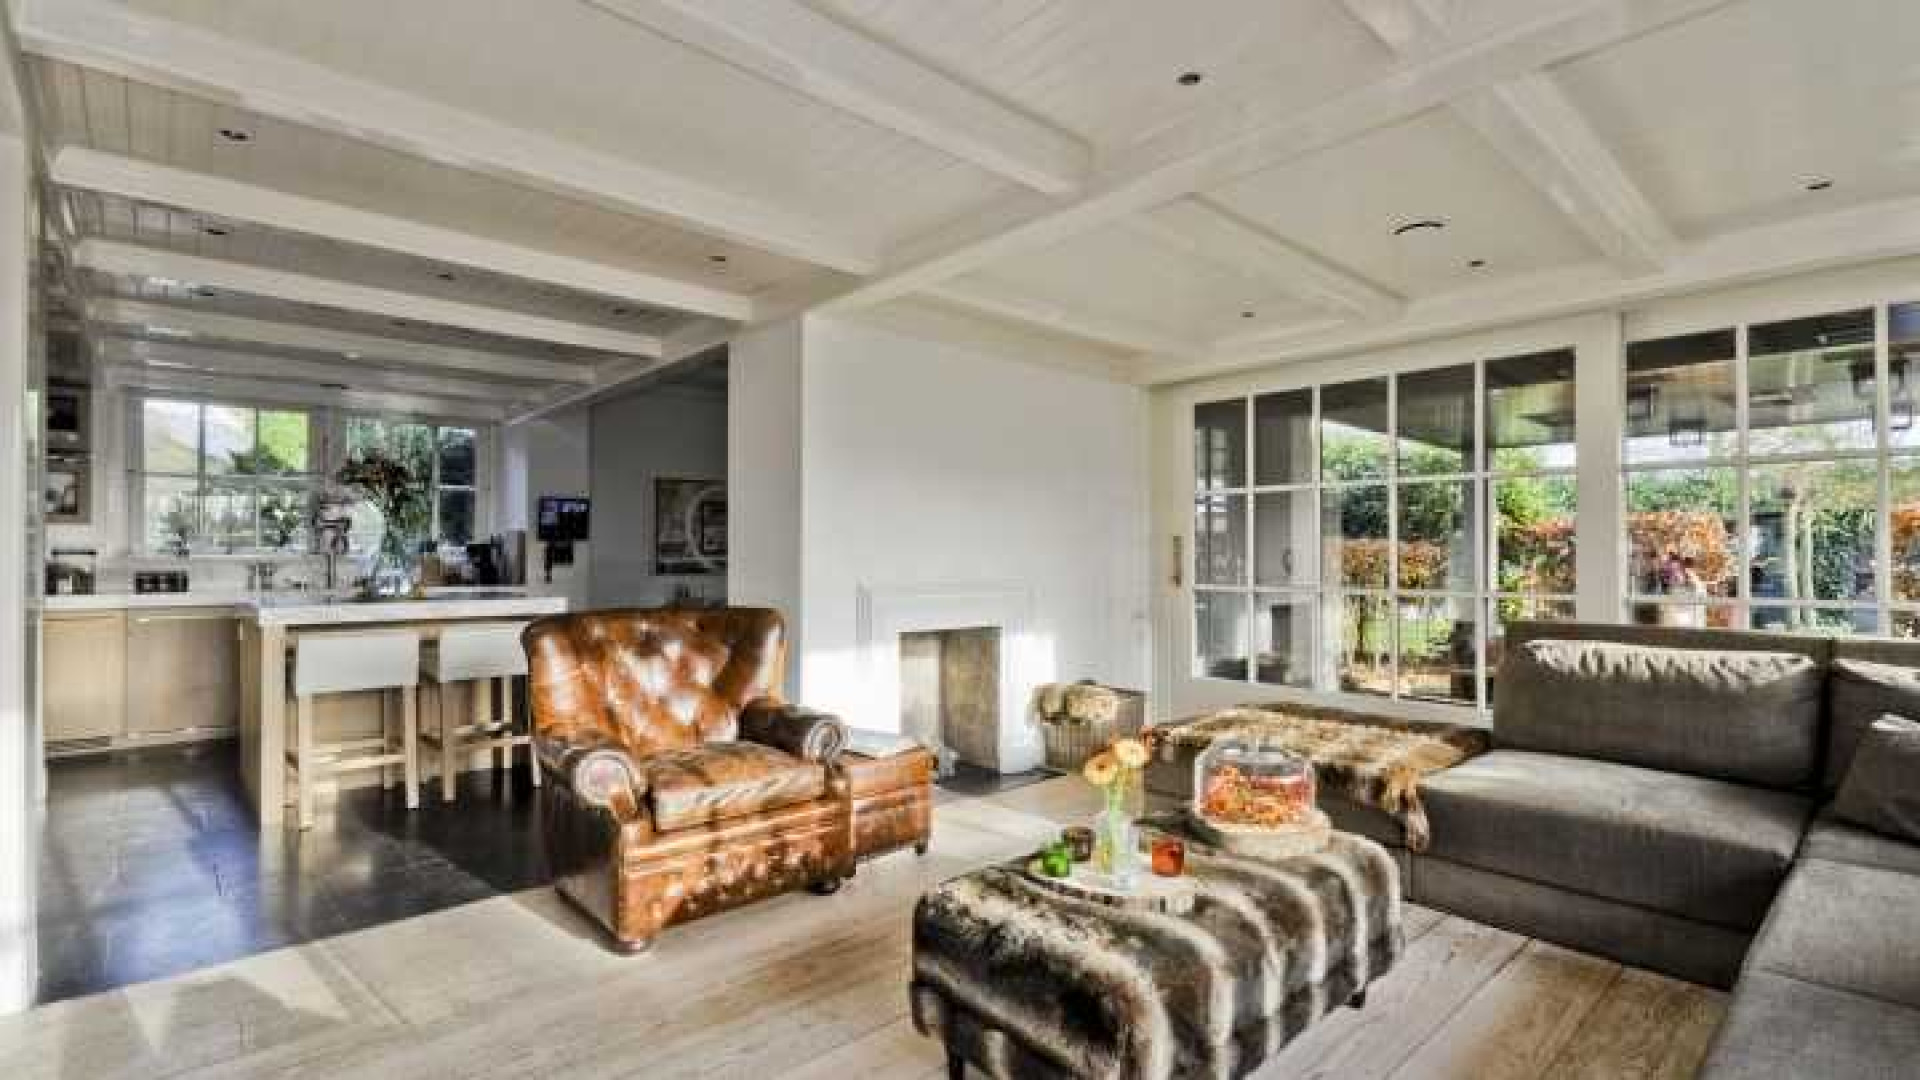 Henny Huisman verkoopt zijn villa zwaar onder de vraagprijs. Zie foto's 6